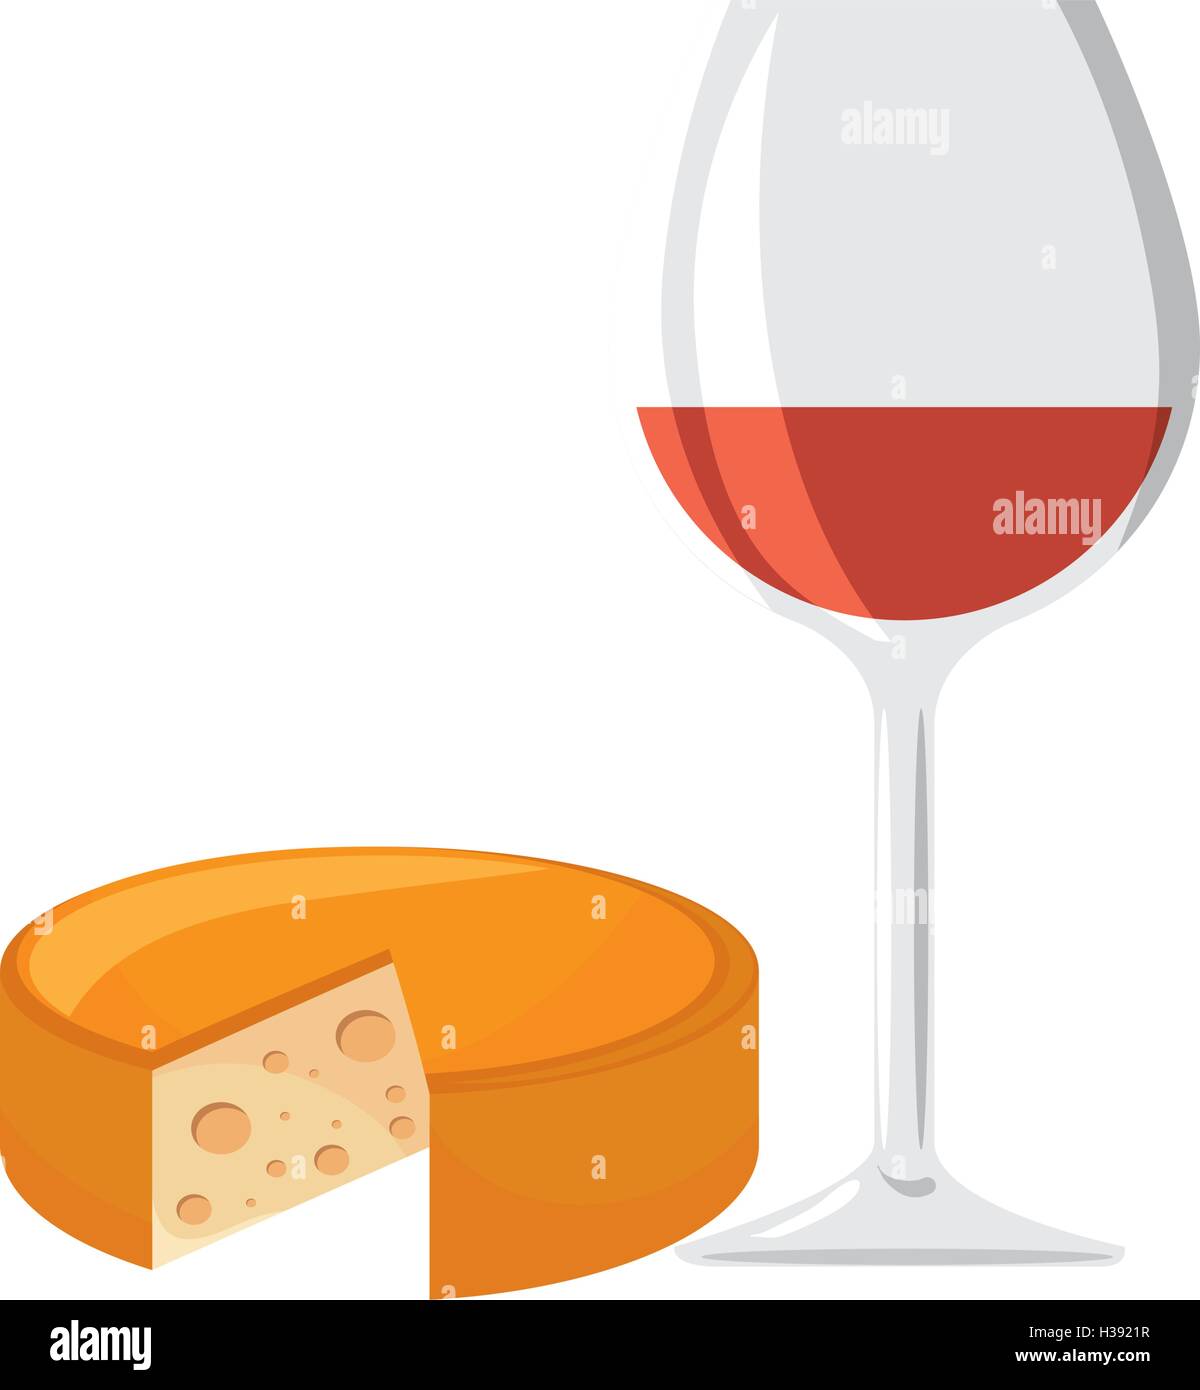 Coupe de vin et fromage Illustration de Vecteur